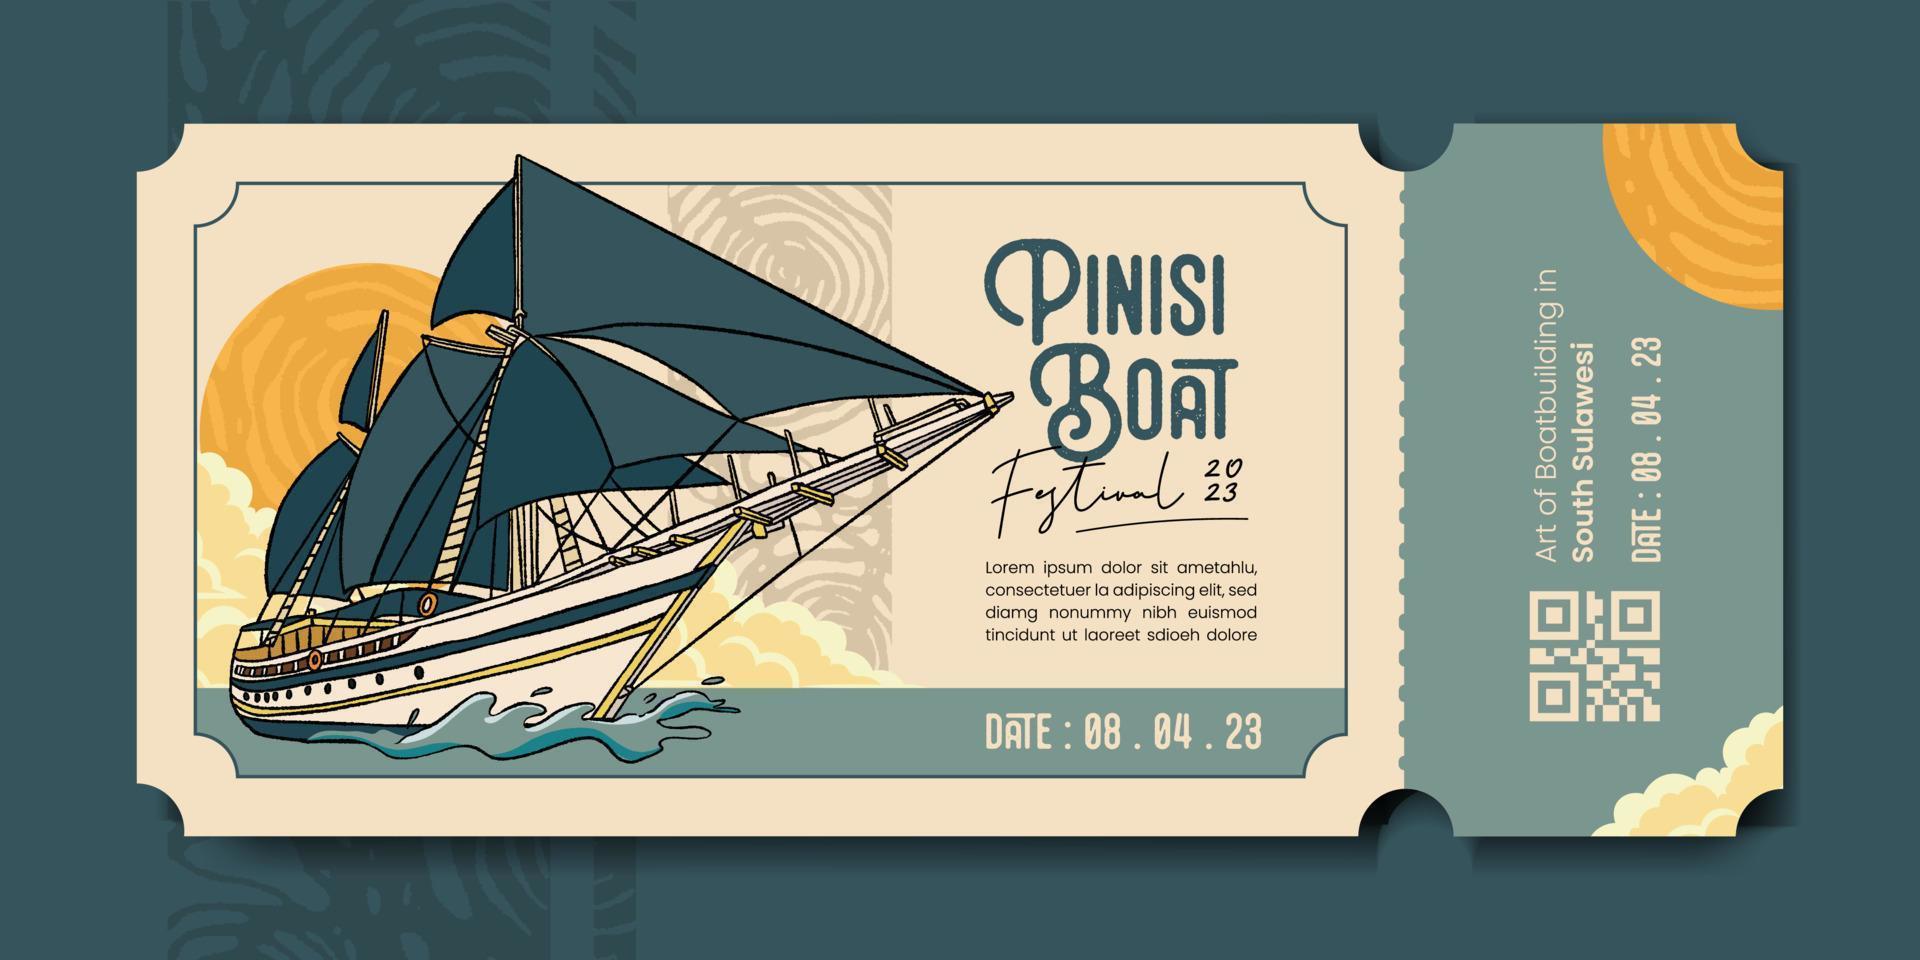 boleto de cupón de evento de transporte con pinisi boat south sulawesi ilustración dibujada a mano vector